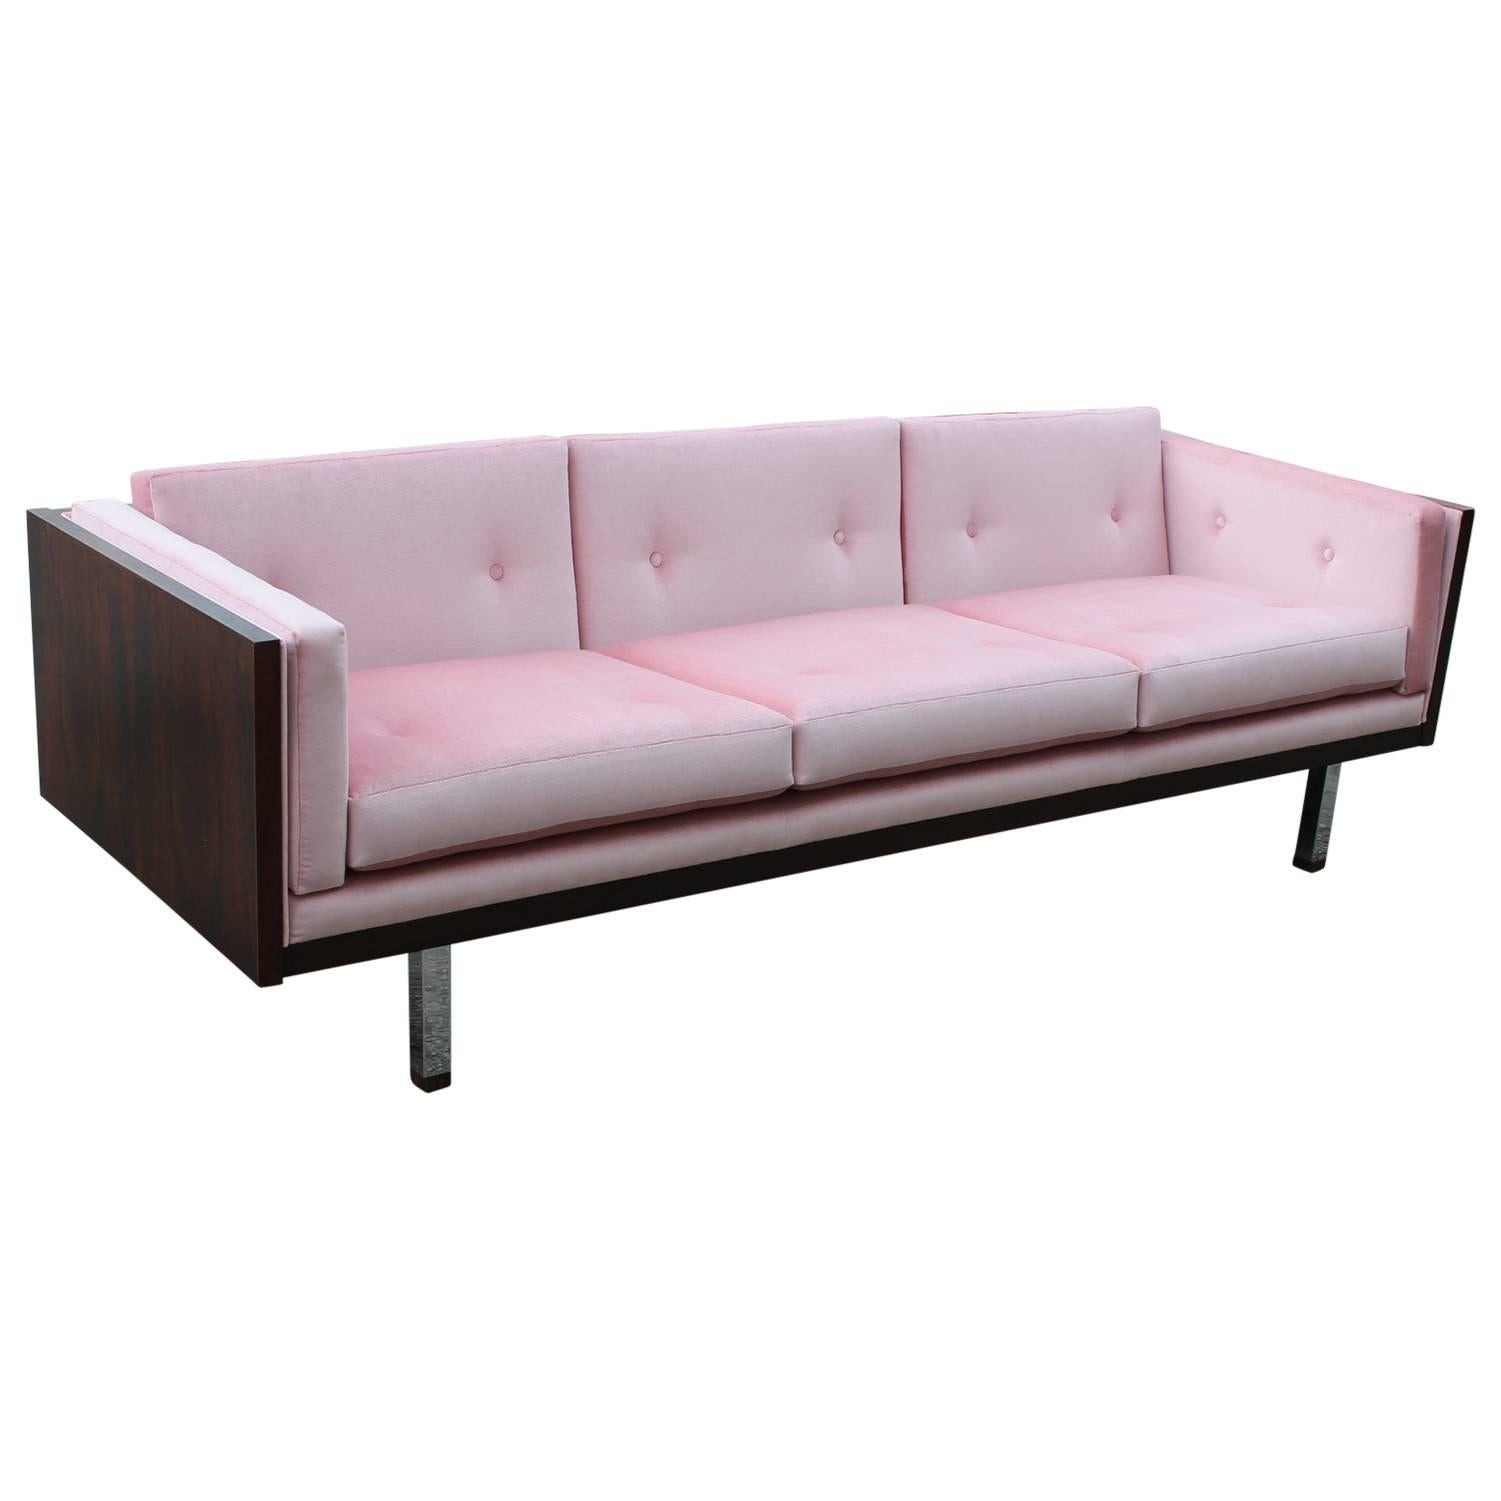 Exquisite Rosewood Case Sofa in Pale Pink Velvet